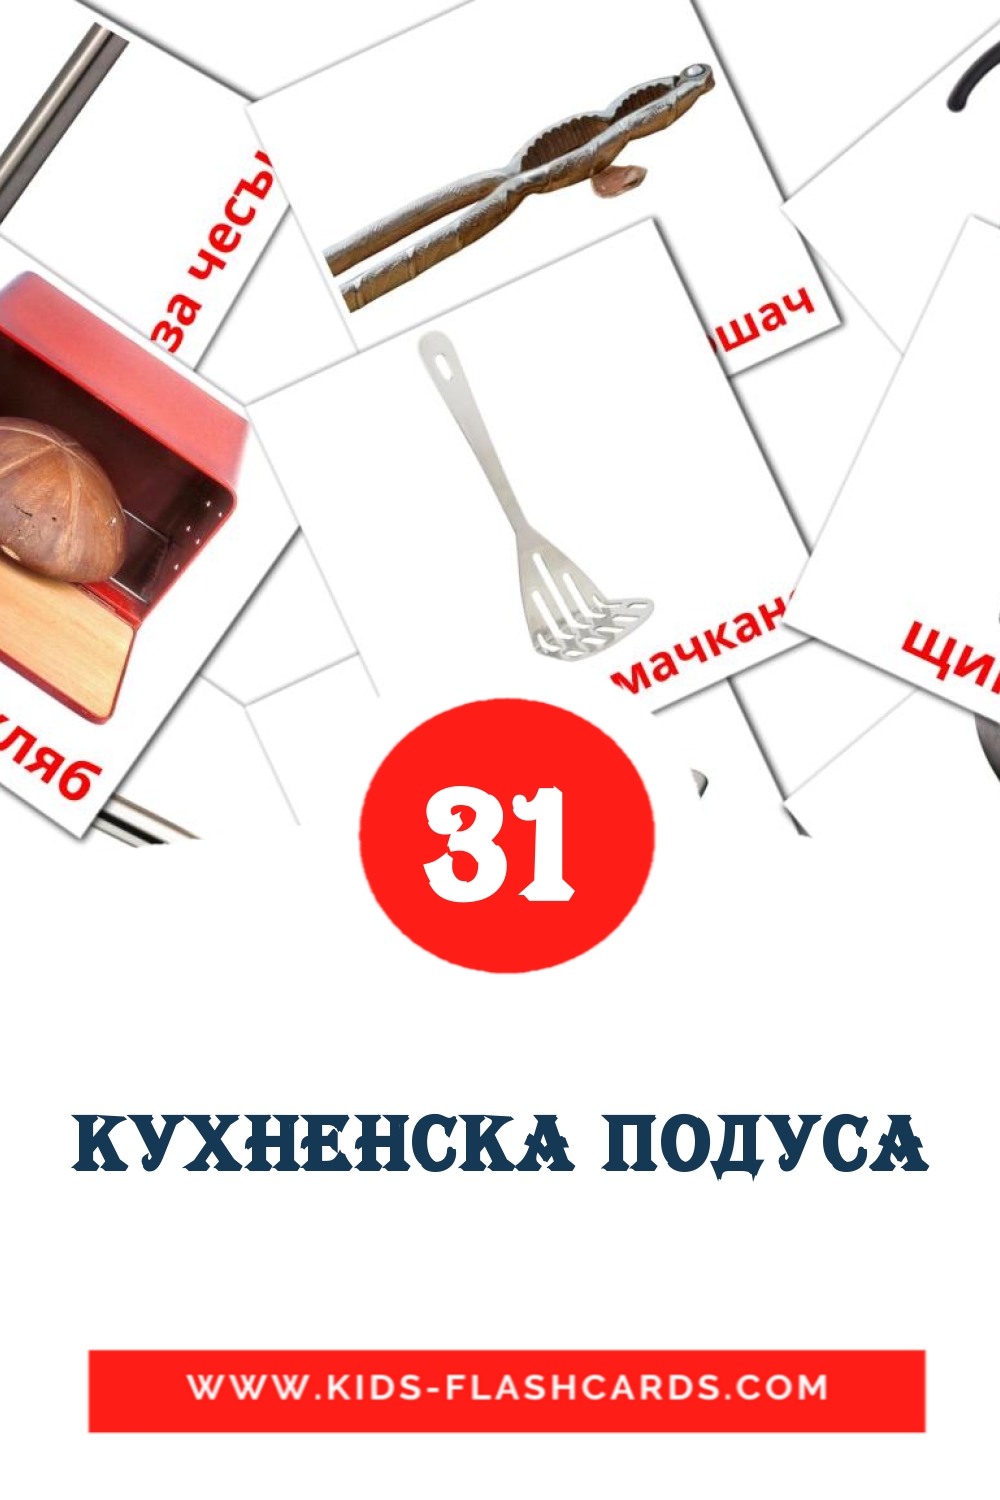 Кухненска подуса на болгарском для Детского Сада (31 карточка)